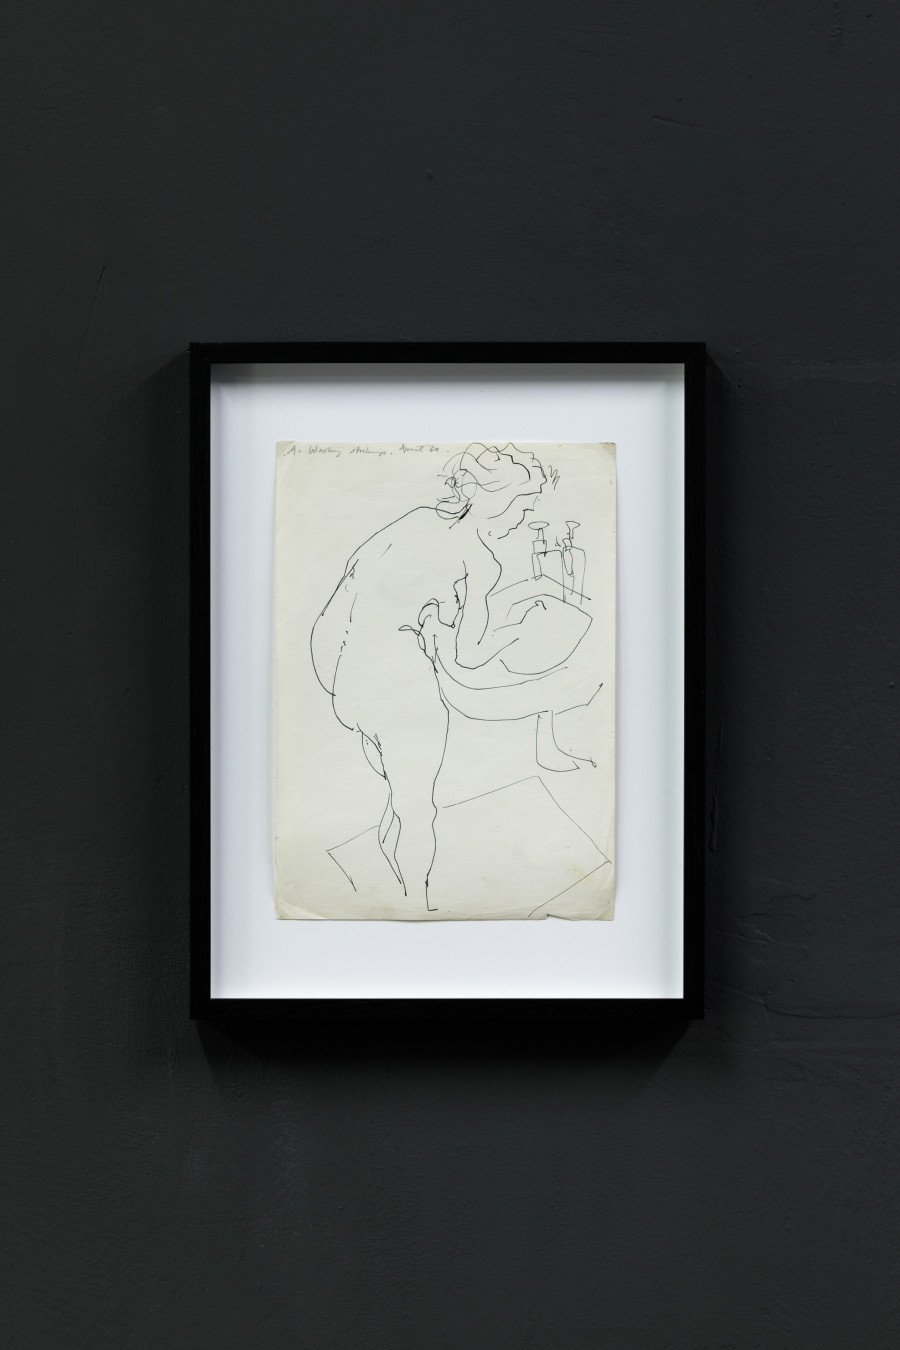 John Berger, A. washing stockings, 1956, ink on paper, 21 x 29.7 cm Photo: Kilian Bannwart